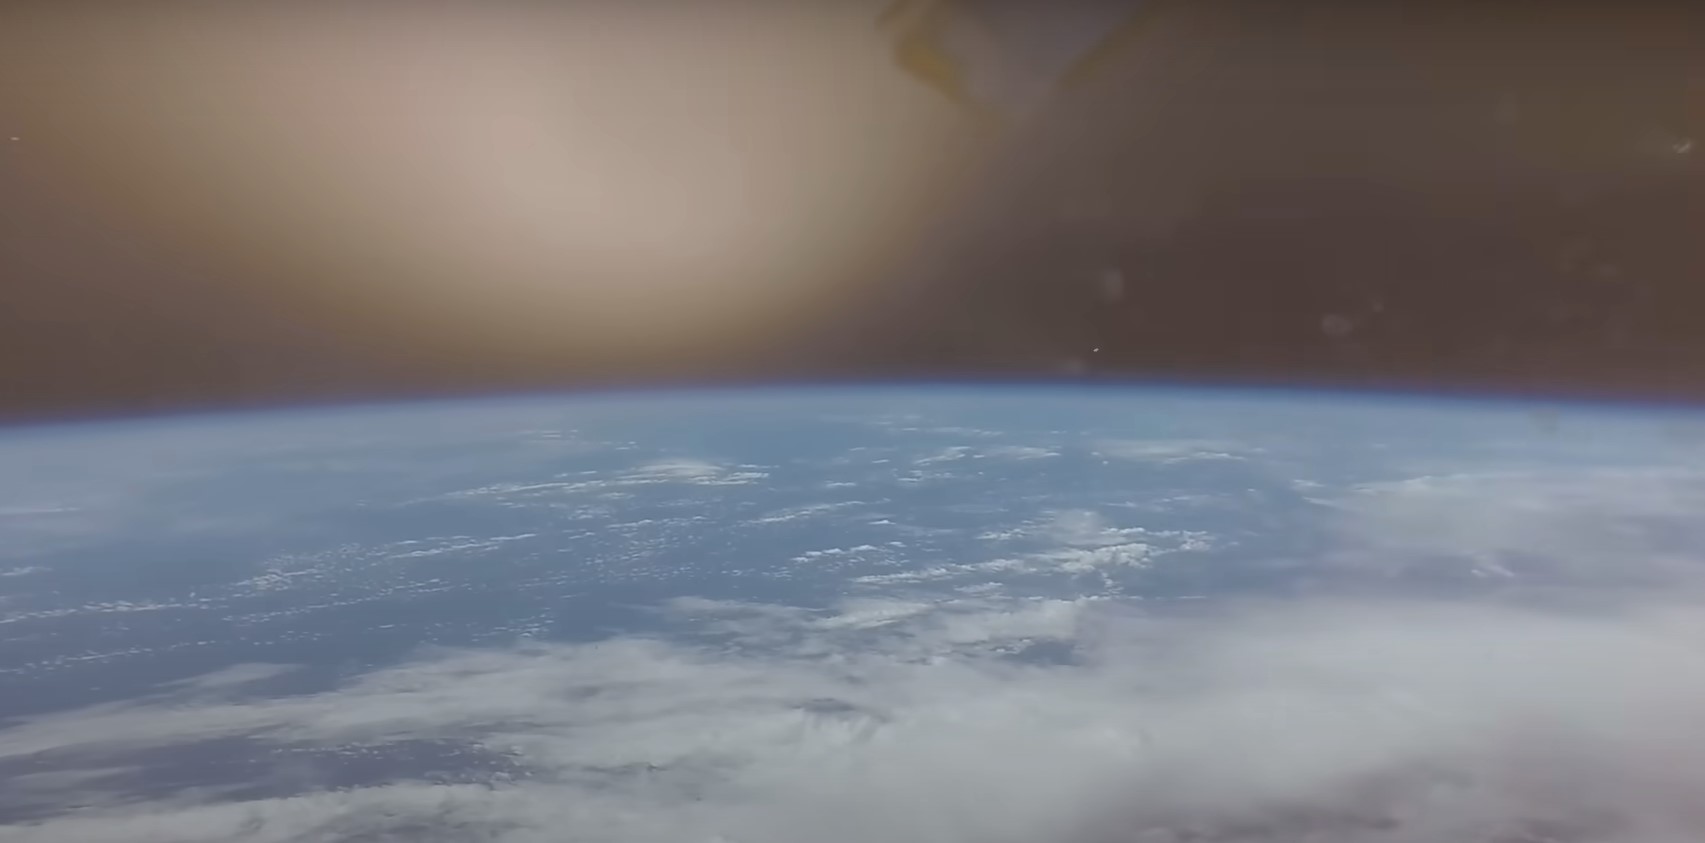 La Nasa difundió un impactante video del retorno a la Tierra de la misión Artemis